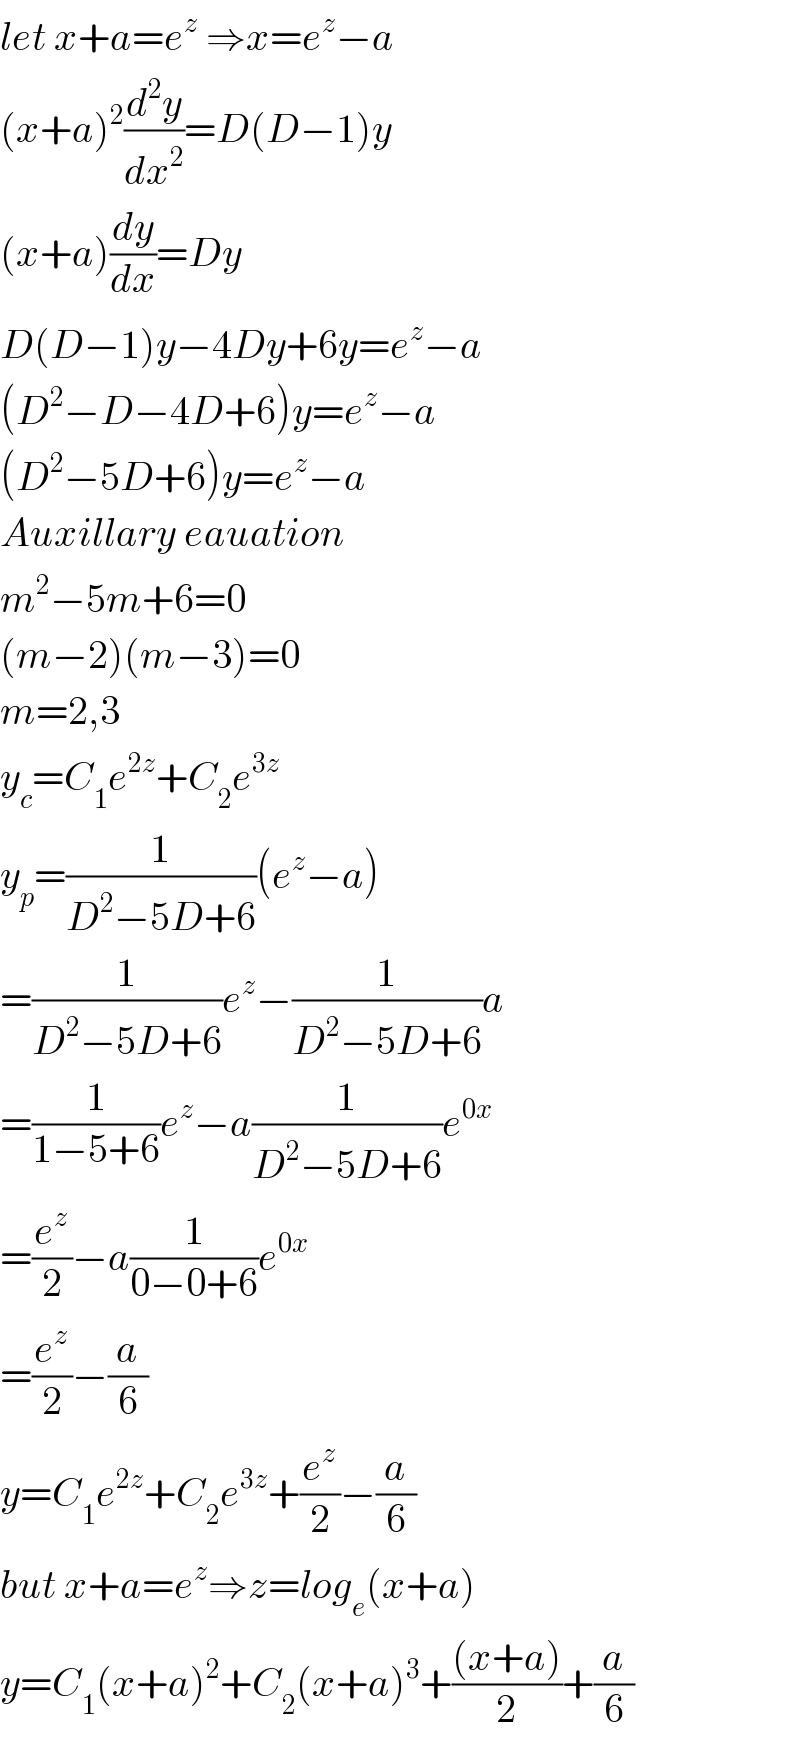 let x+a=e^z  ⇒x=e^z −a  (x+a)^2 (d^2 y/dx^2 )=D(D−1)y  (x+a)(dy/dx)=Dy  D(D−1)y−4Dy+6y=e^z −a  (D^2 −D−4D+6)y=e^z −a  (D^2 −5D+6)y=e^z −a  Auxillary eauation  m^2 −5m+6=0  (m−2)(m−3)=0  m=2,3  y_c =C_1 e^(2z) +C_2 e^(3z)   y_p =(1/(D^2 −5D+6))(e^z −a)  =(1/(D^2 −5D+6))e^z −(1/(D^2 −5D+6))a  =(1/(1−5+6))e^z −a(1/(D^2 −5D+6))e^(0x)   =(e^z /2)−a(1/(0−0+6))e^(0x)   =(e^z /2)−(a/6)  y=C_1 e^(2z) +C_2 e^(3z) +(e^z /2)−(a/6)  but x+a=e^z ⇒z=log_e (x+a)  y=C_1 (x+a)^2 +C_2 (x+a)^3 +(((x+a))/2)+(a/6)  